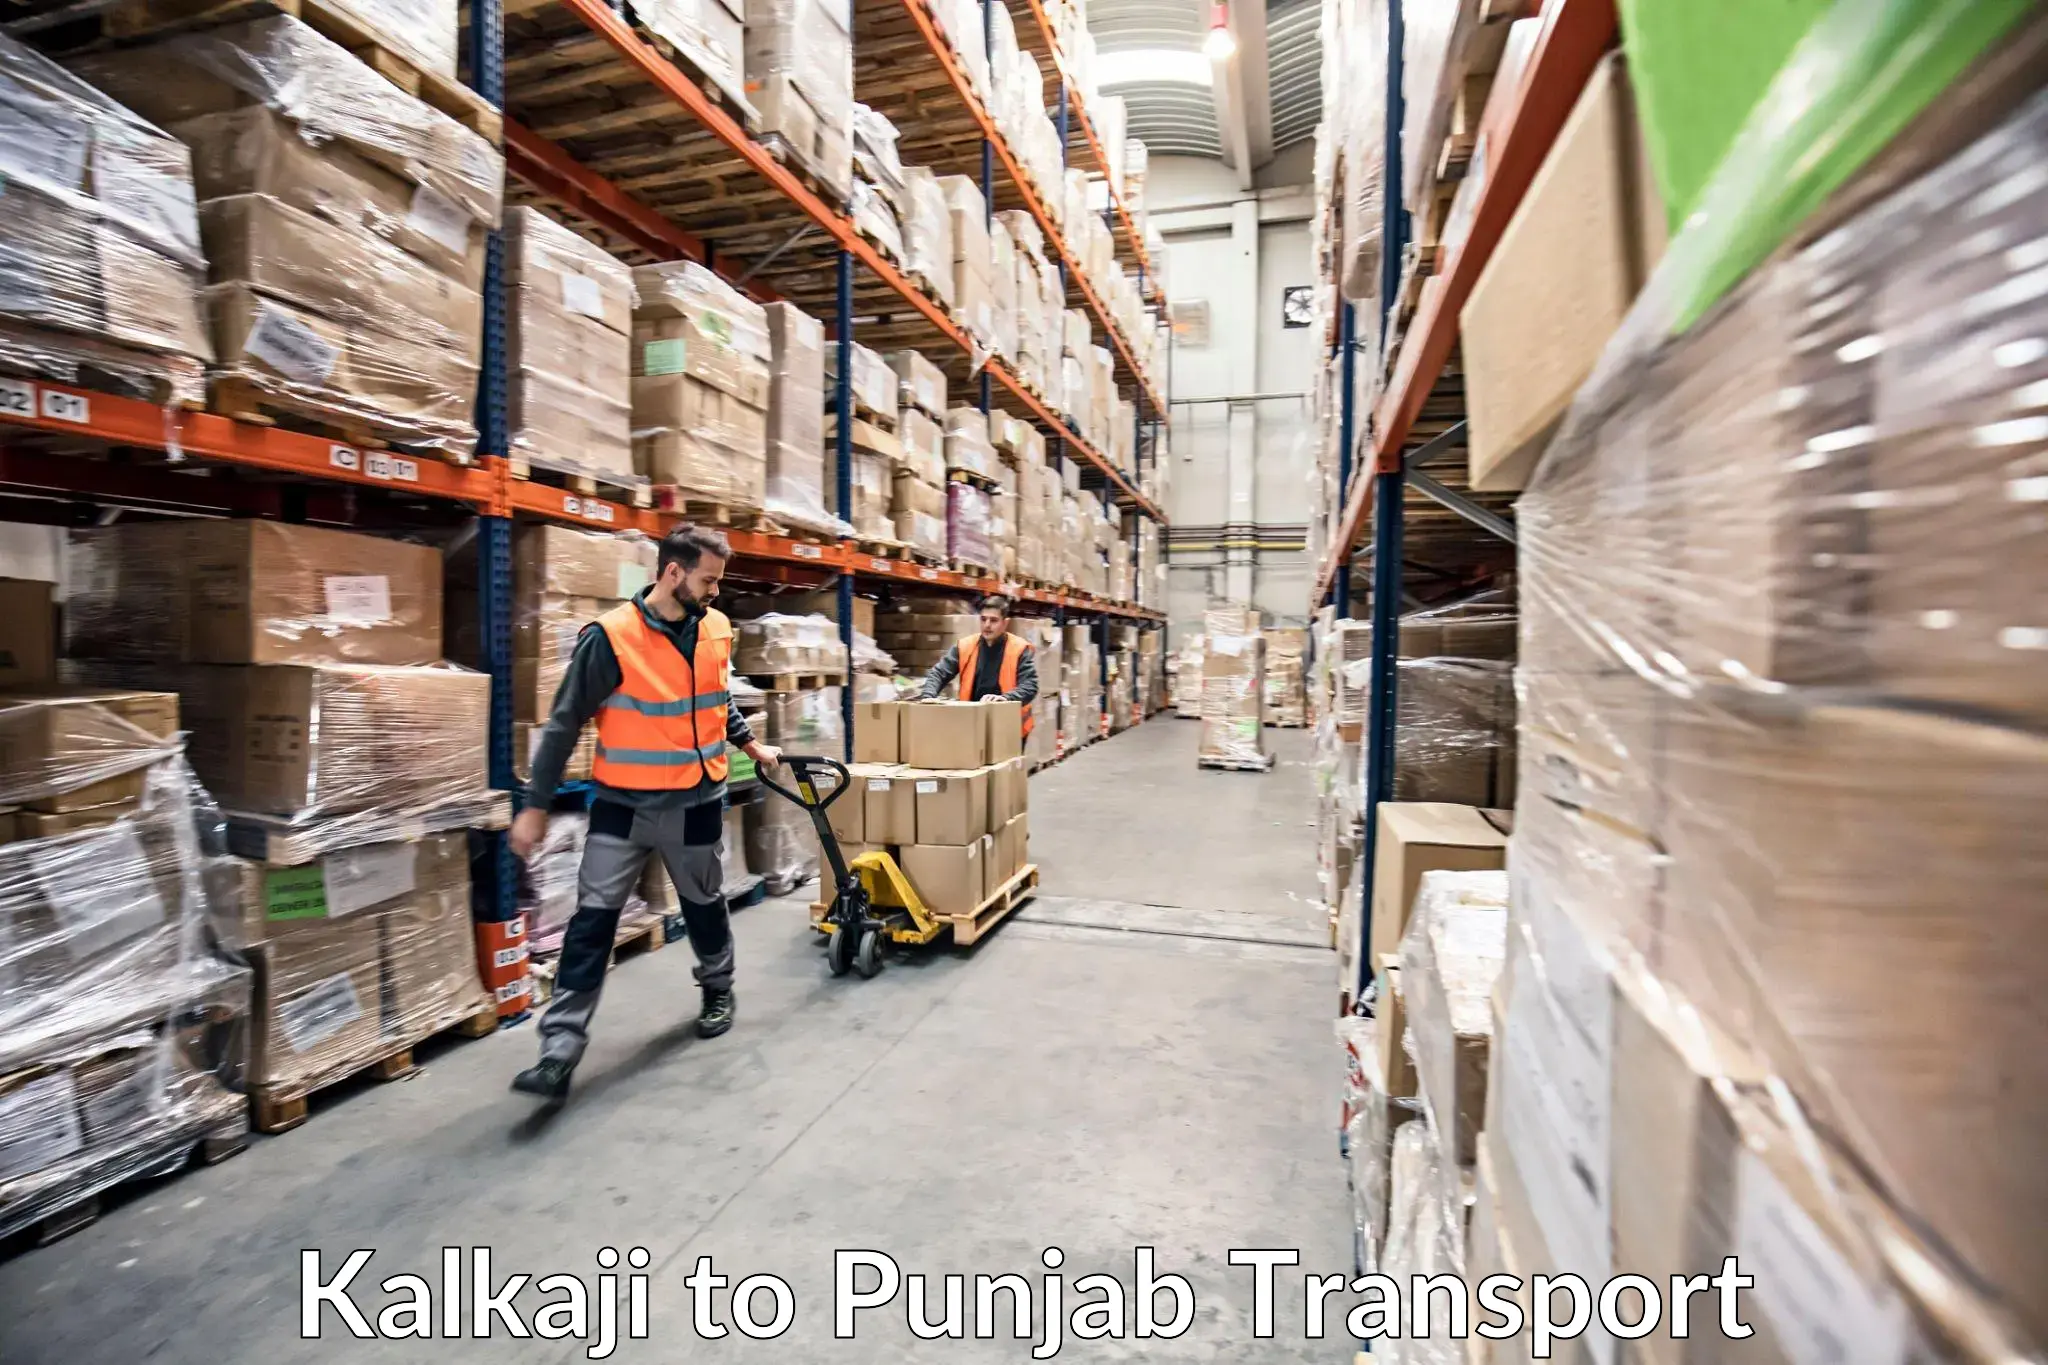 Cargo transport services Kalkaji to Punjab